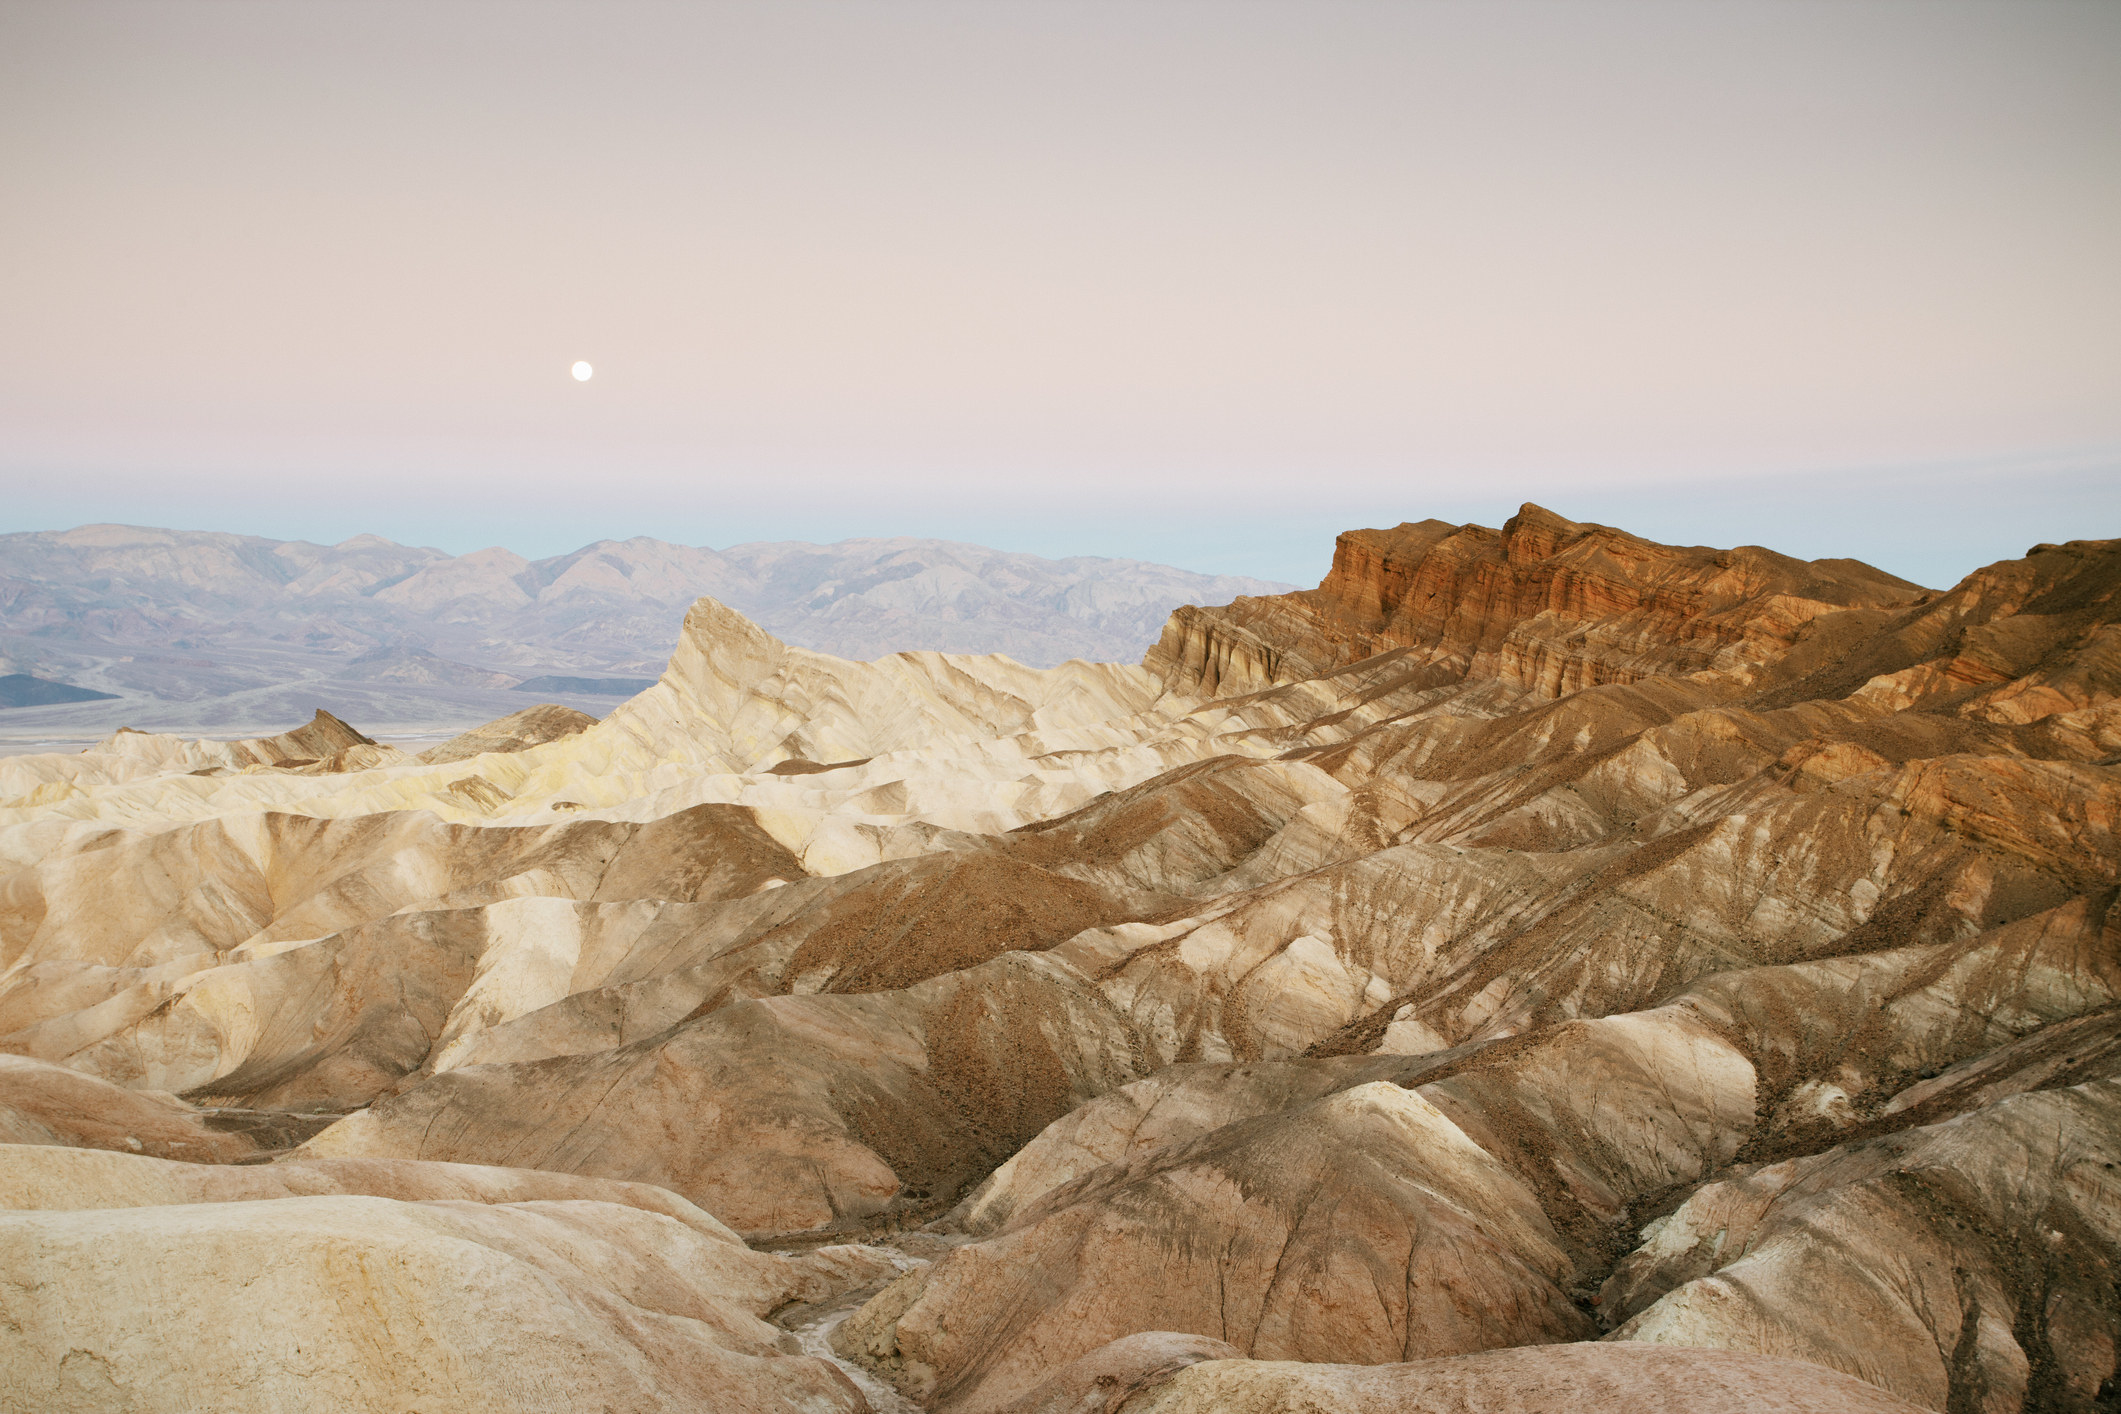 Rocky desert landscape in Death Valley.